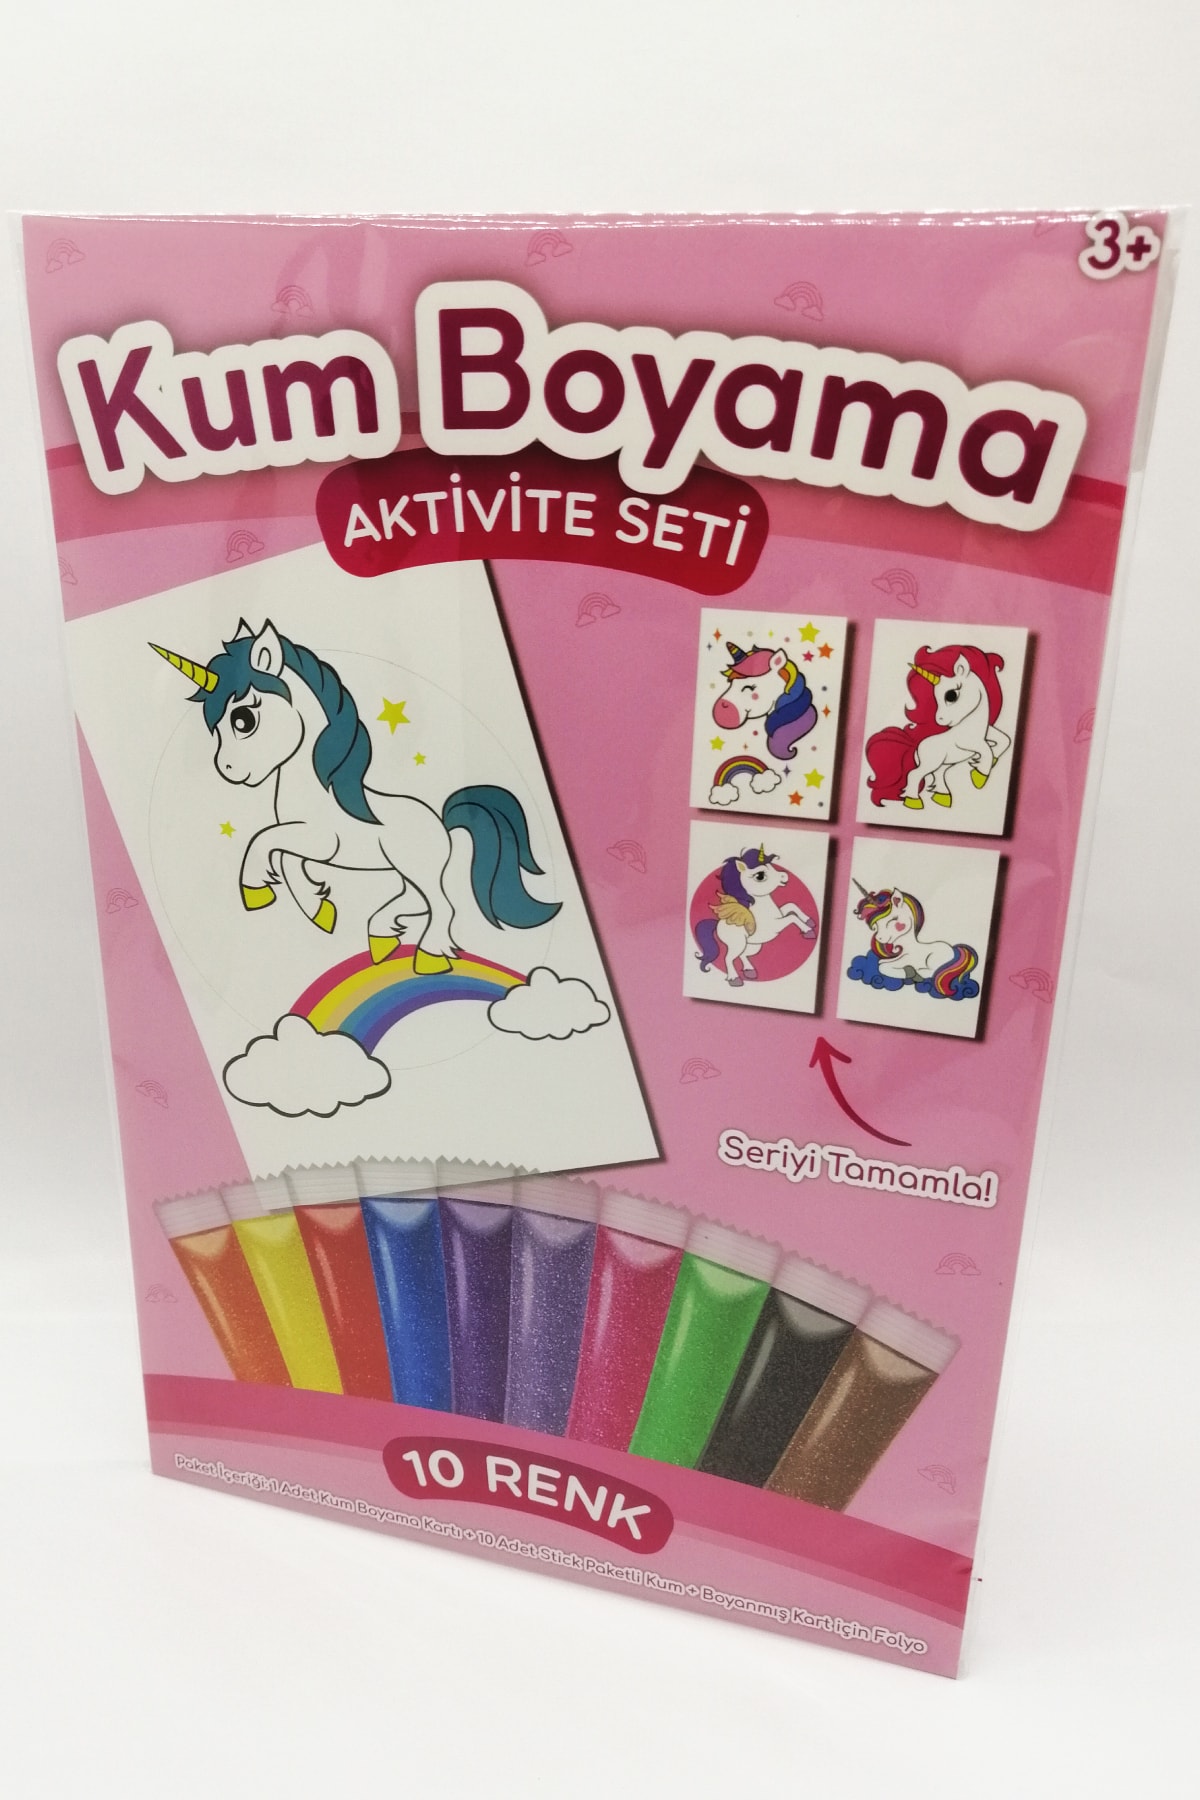 Kumbo Kum Boyama Gökkuşağı Unicorn Kum Boyama Aktivite Seti